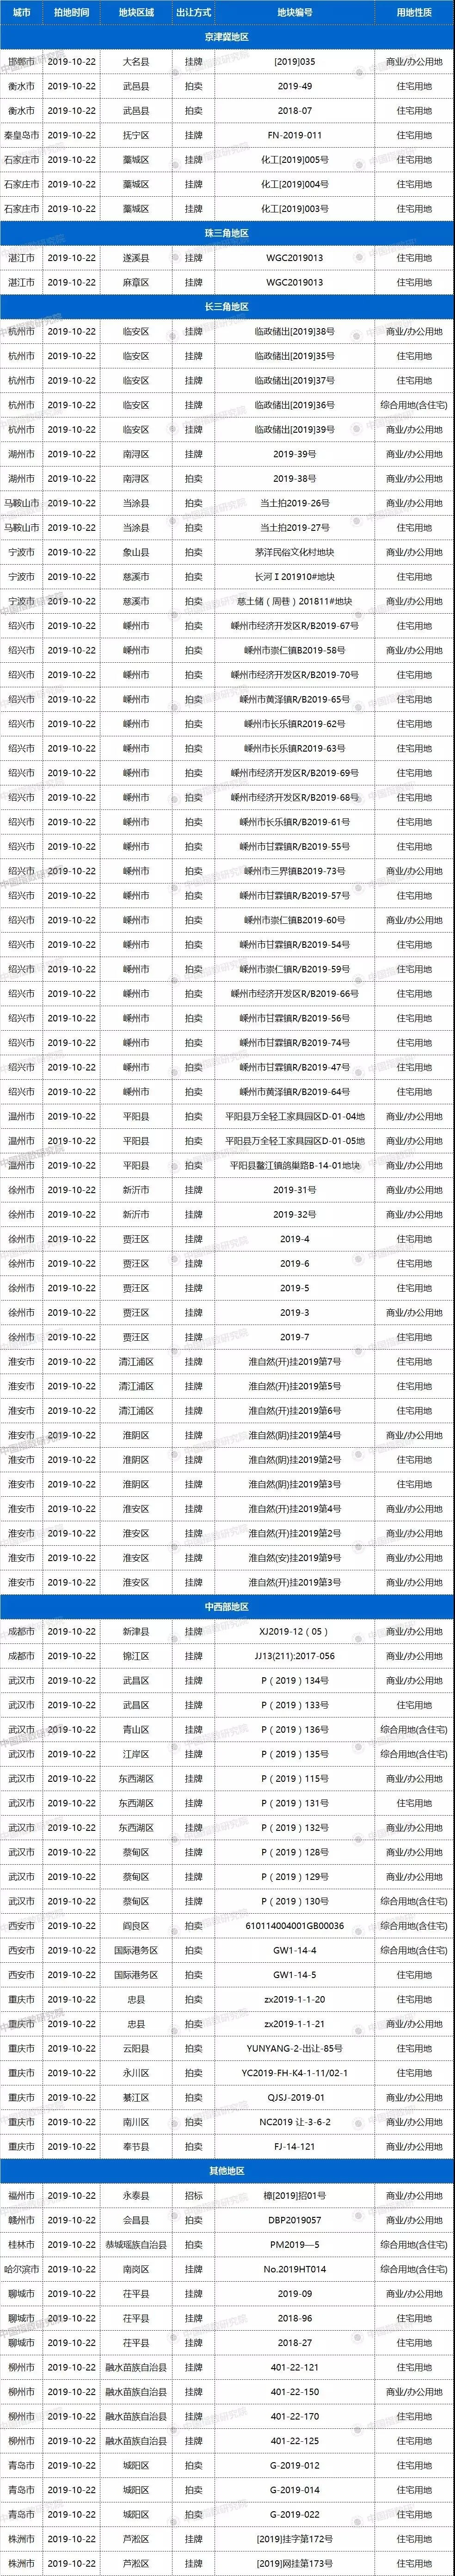 土拍预告 | 10月22日26城99宗地块出让，武汉5宗宅地起拍总价超88亿